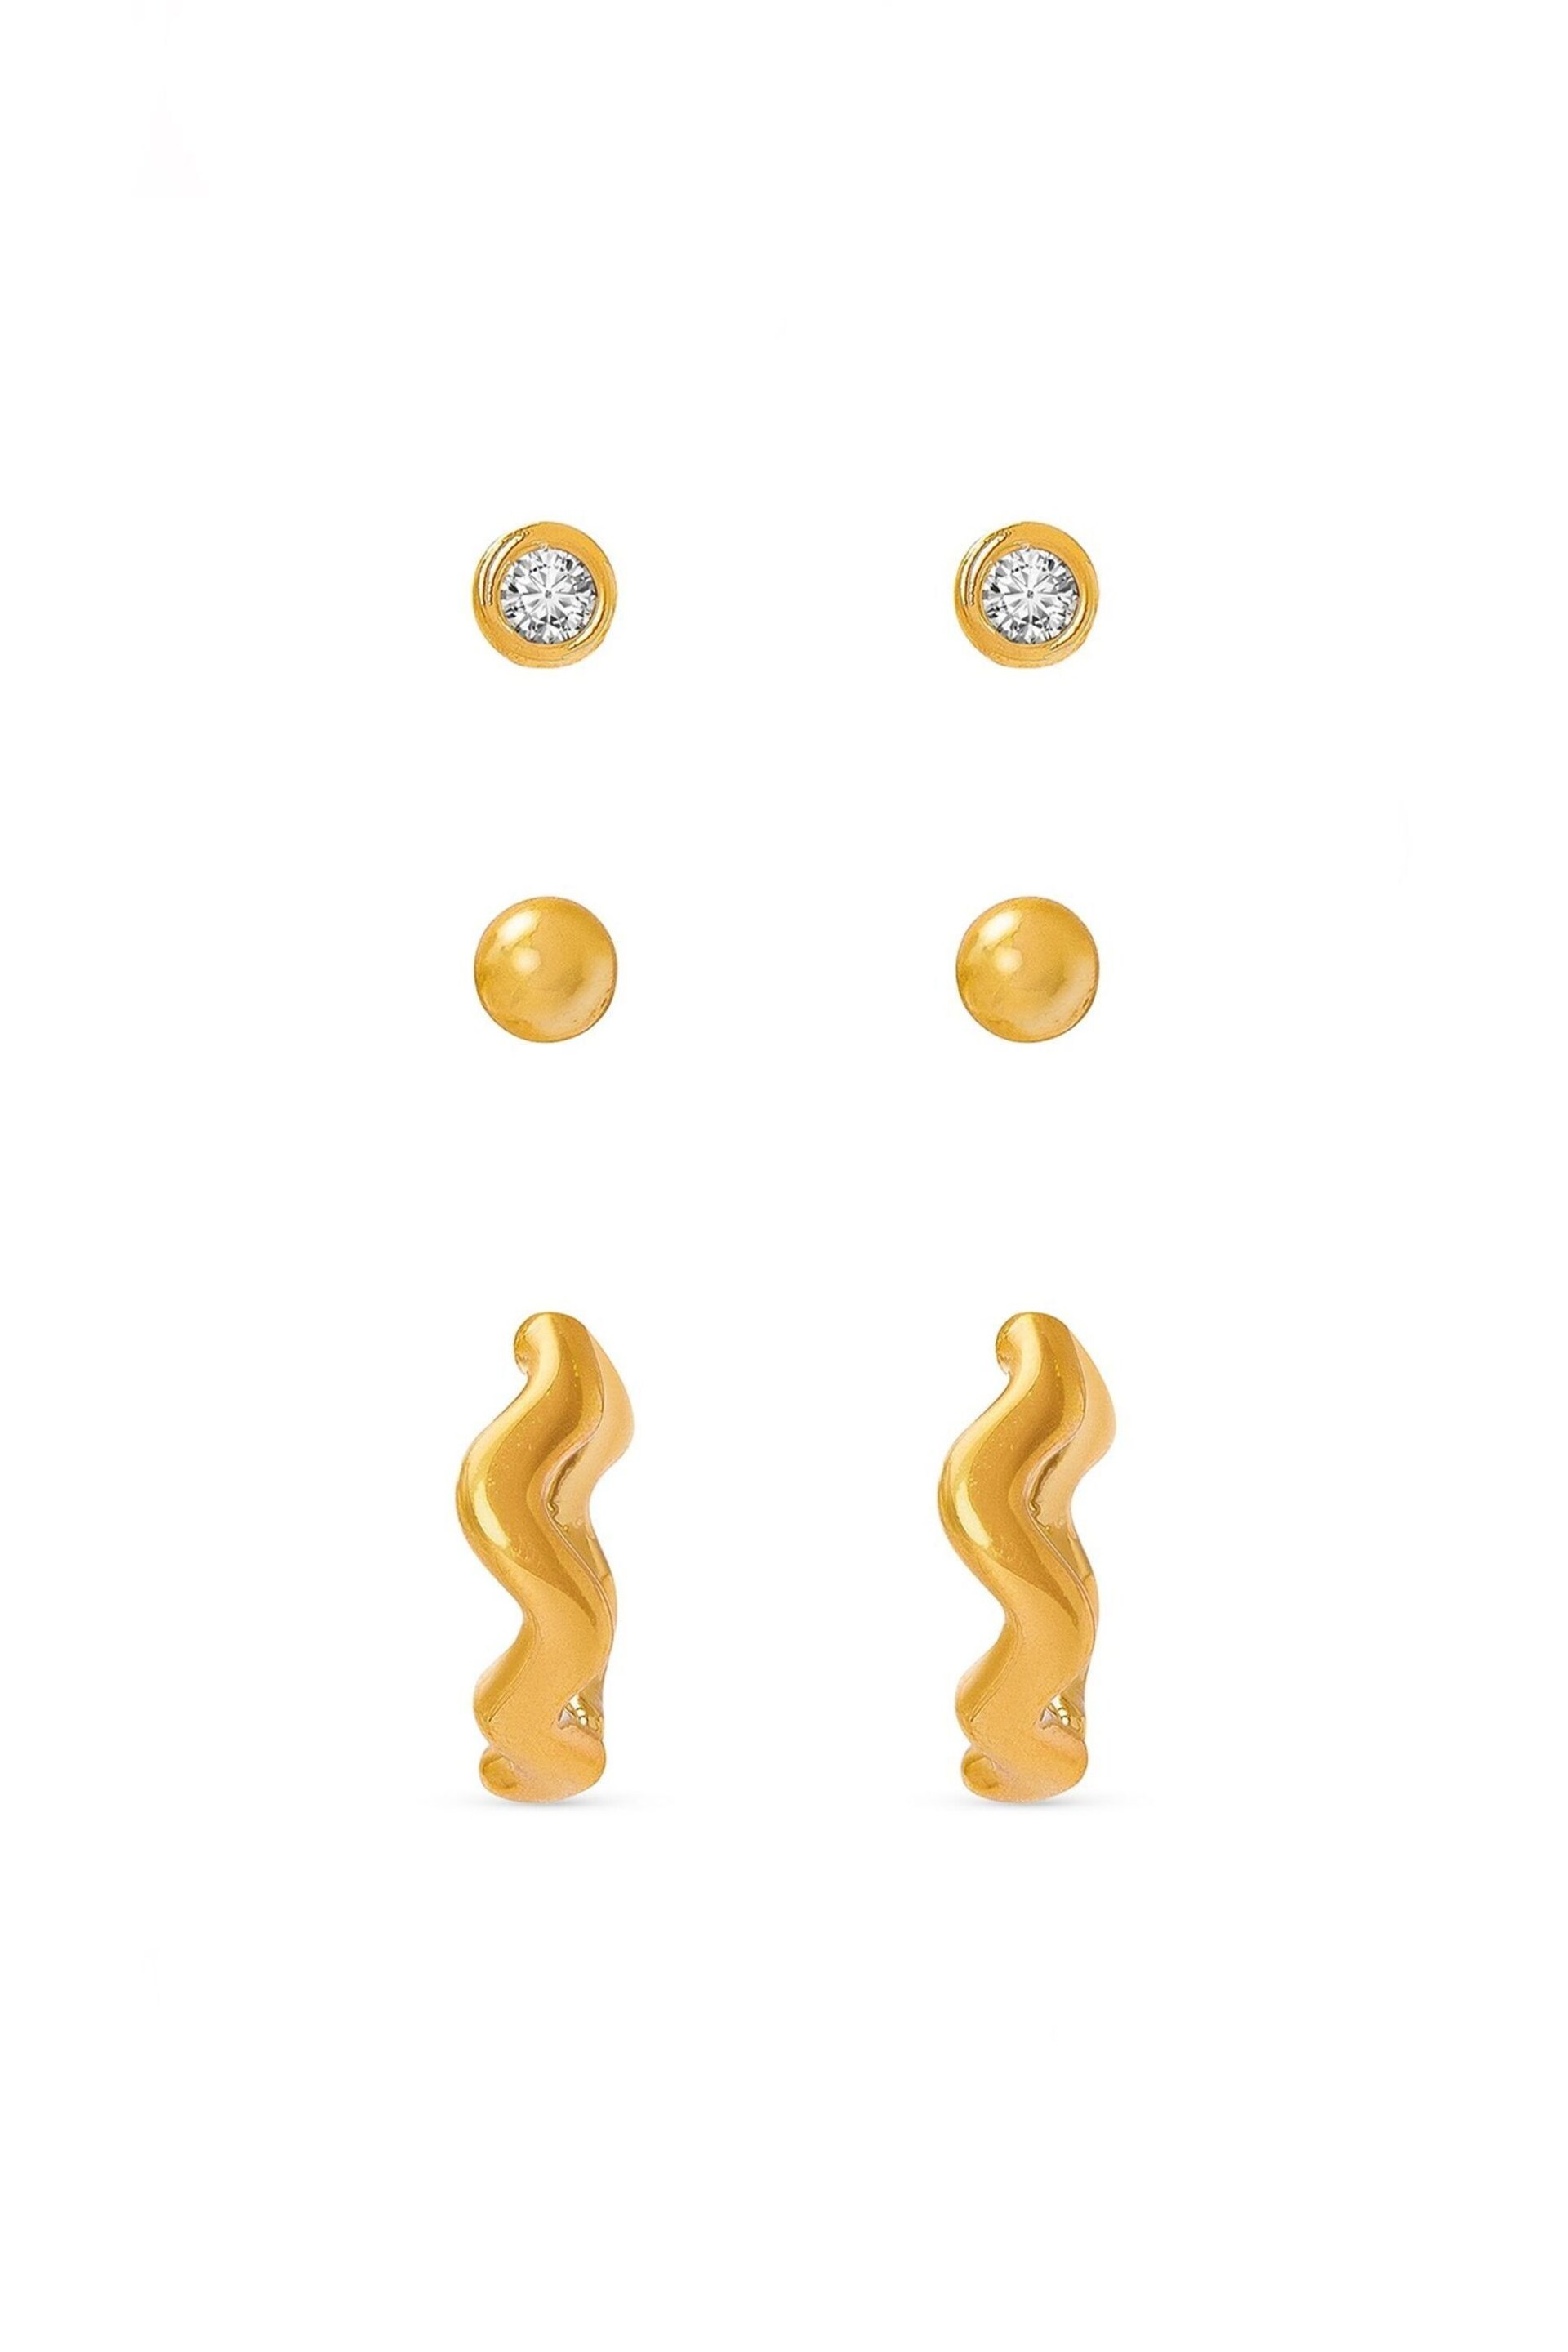 Orelia London 18k Gold Plating Wave Huggie Earrings 6 Pack - Image 1 of 2